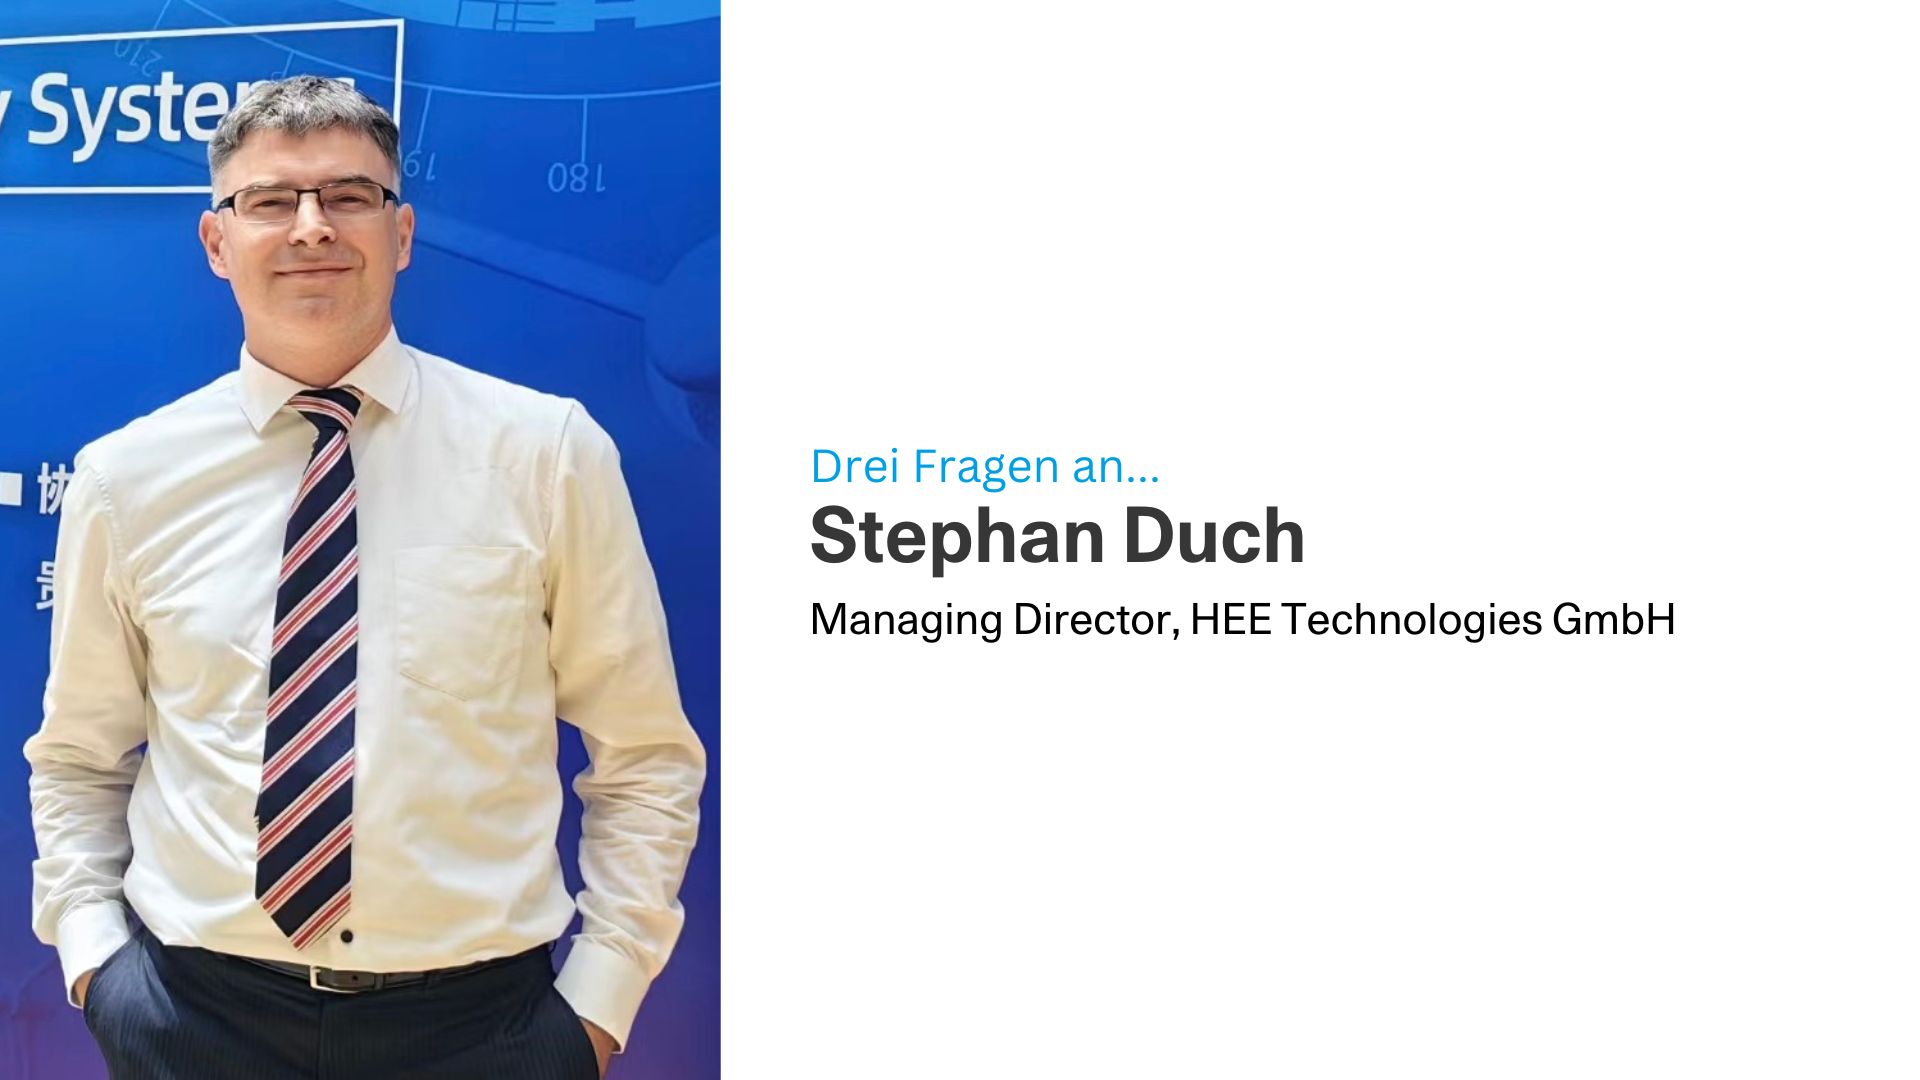 Drei Fragen an Stephan Duch, HEE Technologies